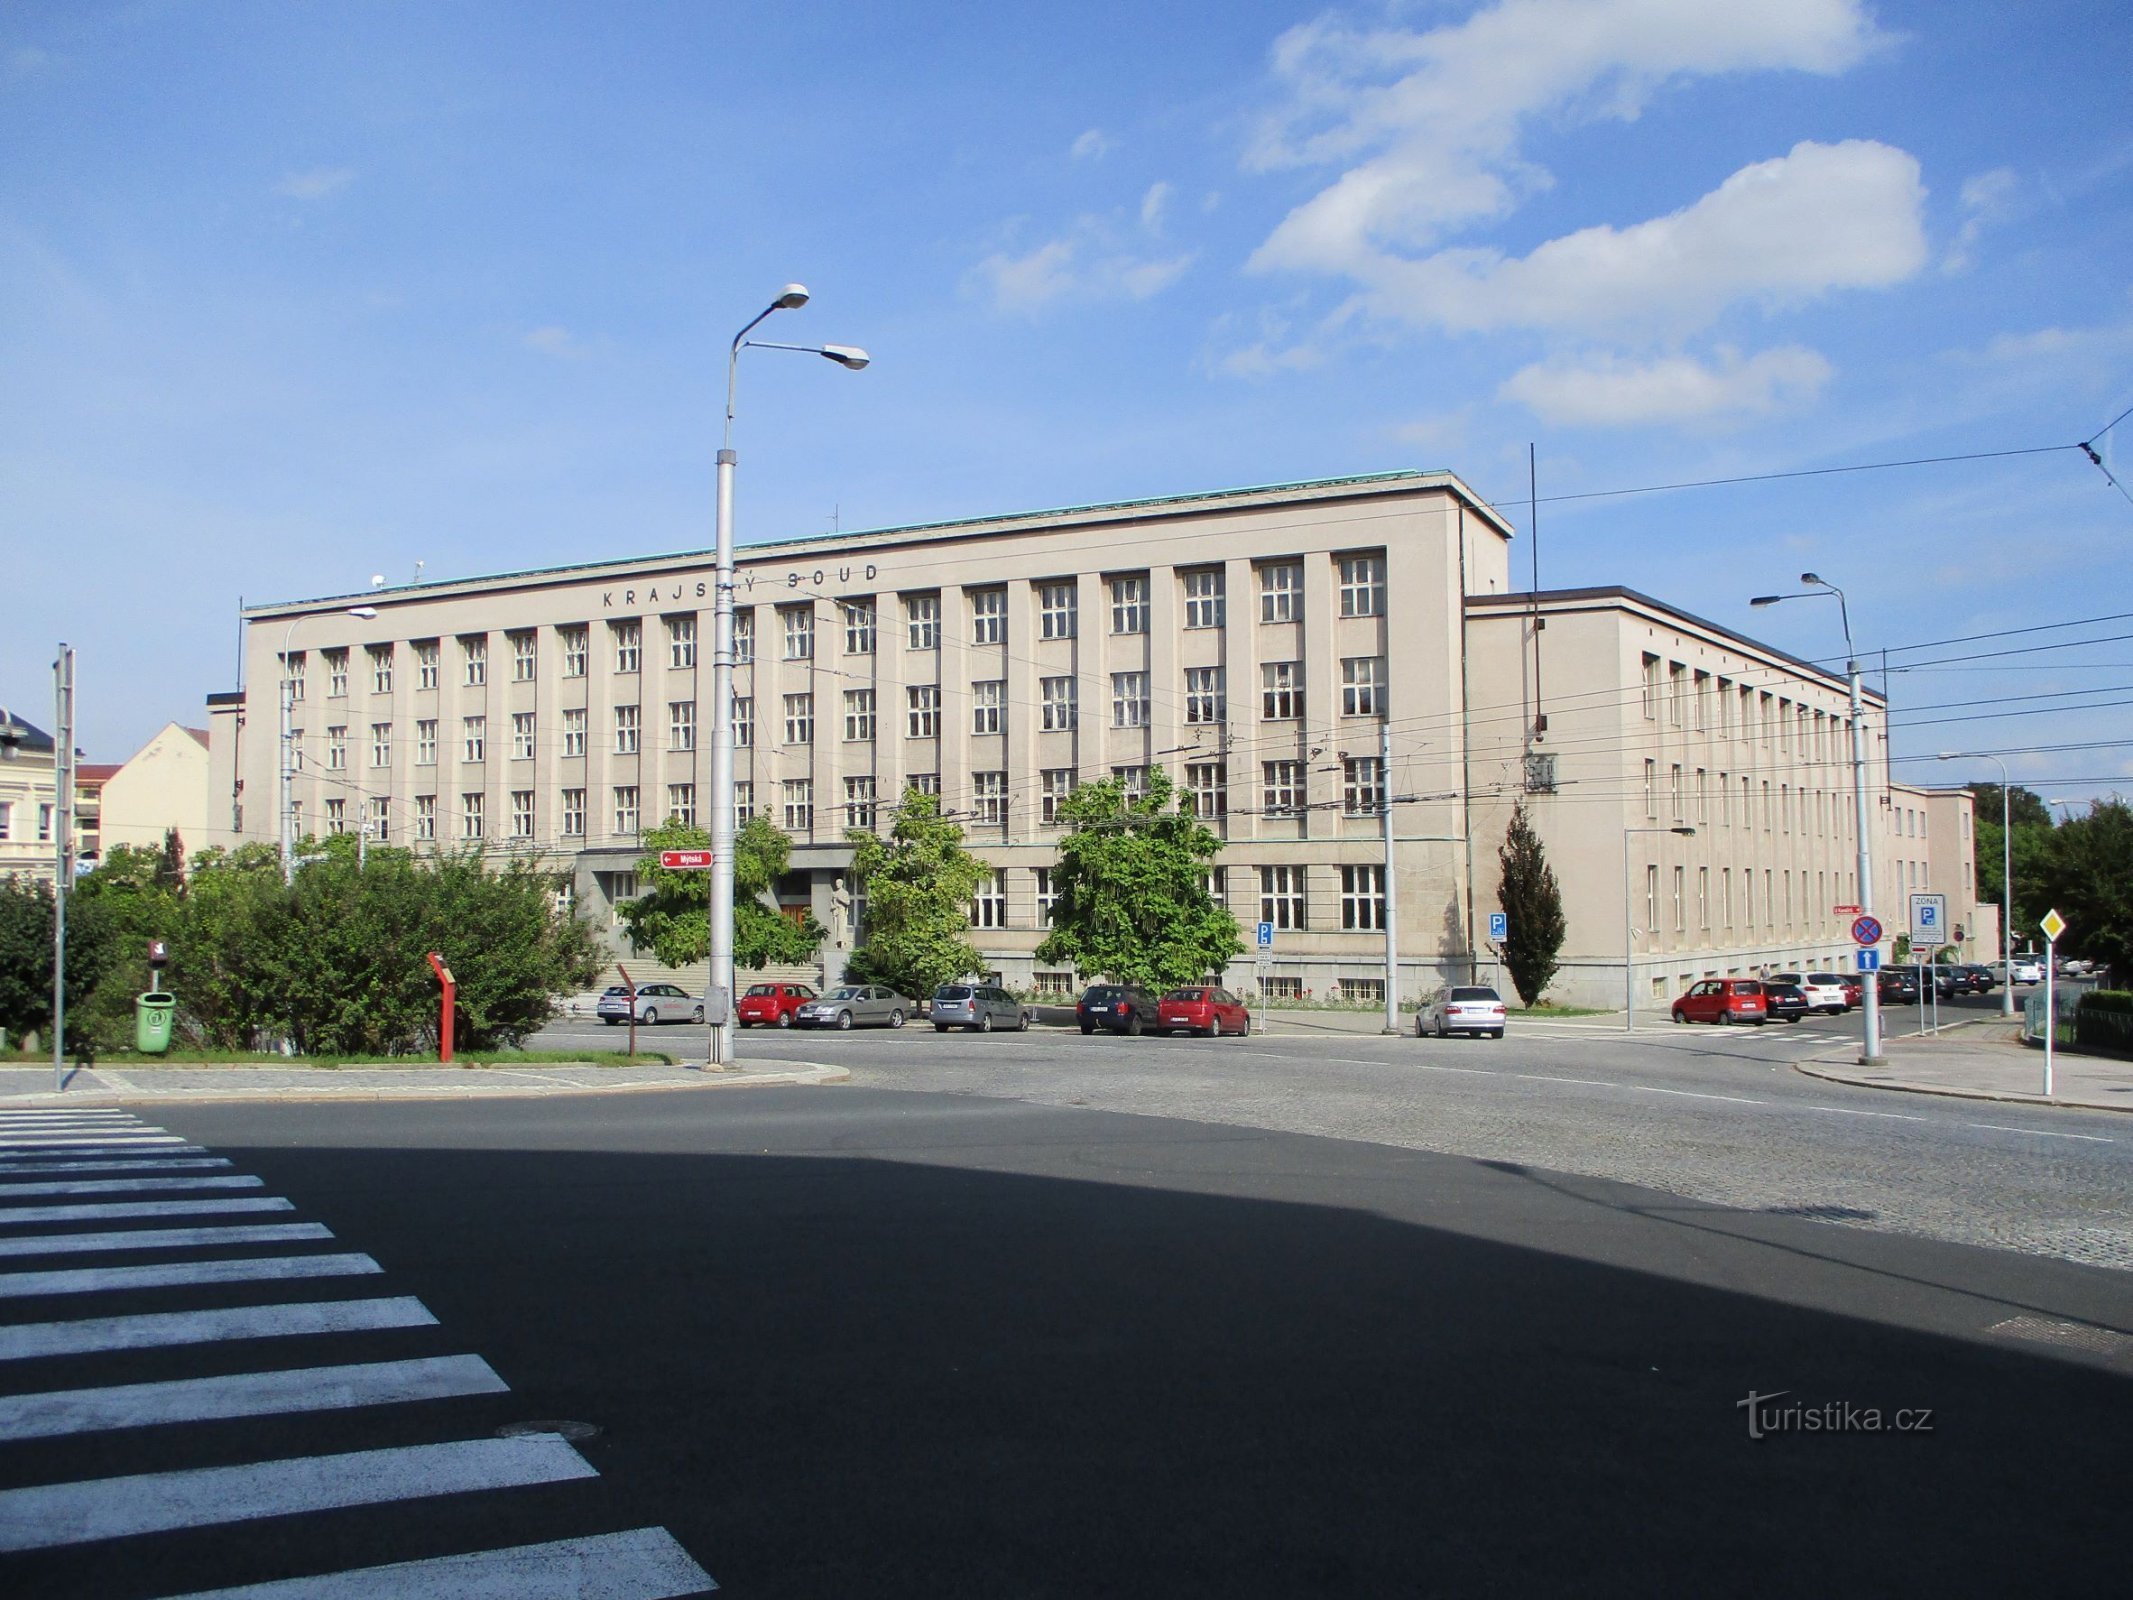 Περιφερειακό Δικαστήριο (Hradec Králové, 15.9.2019/XNUMX/XNUMX)